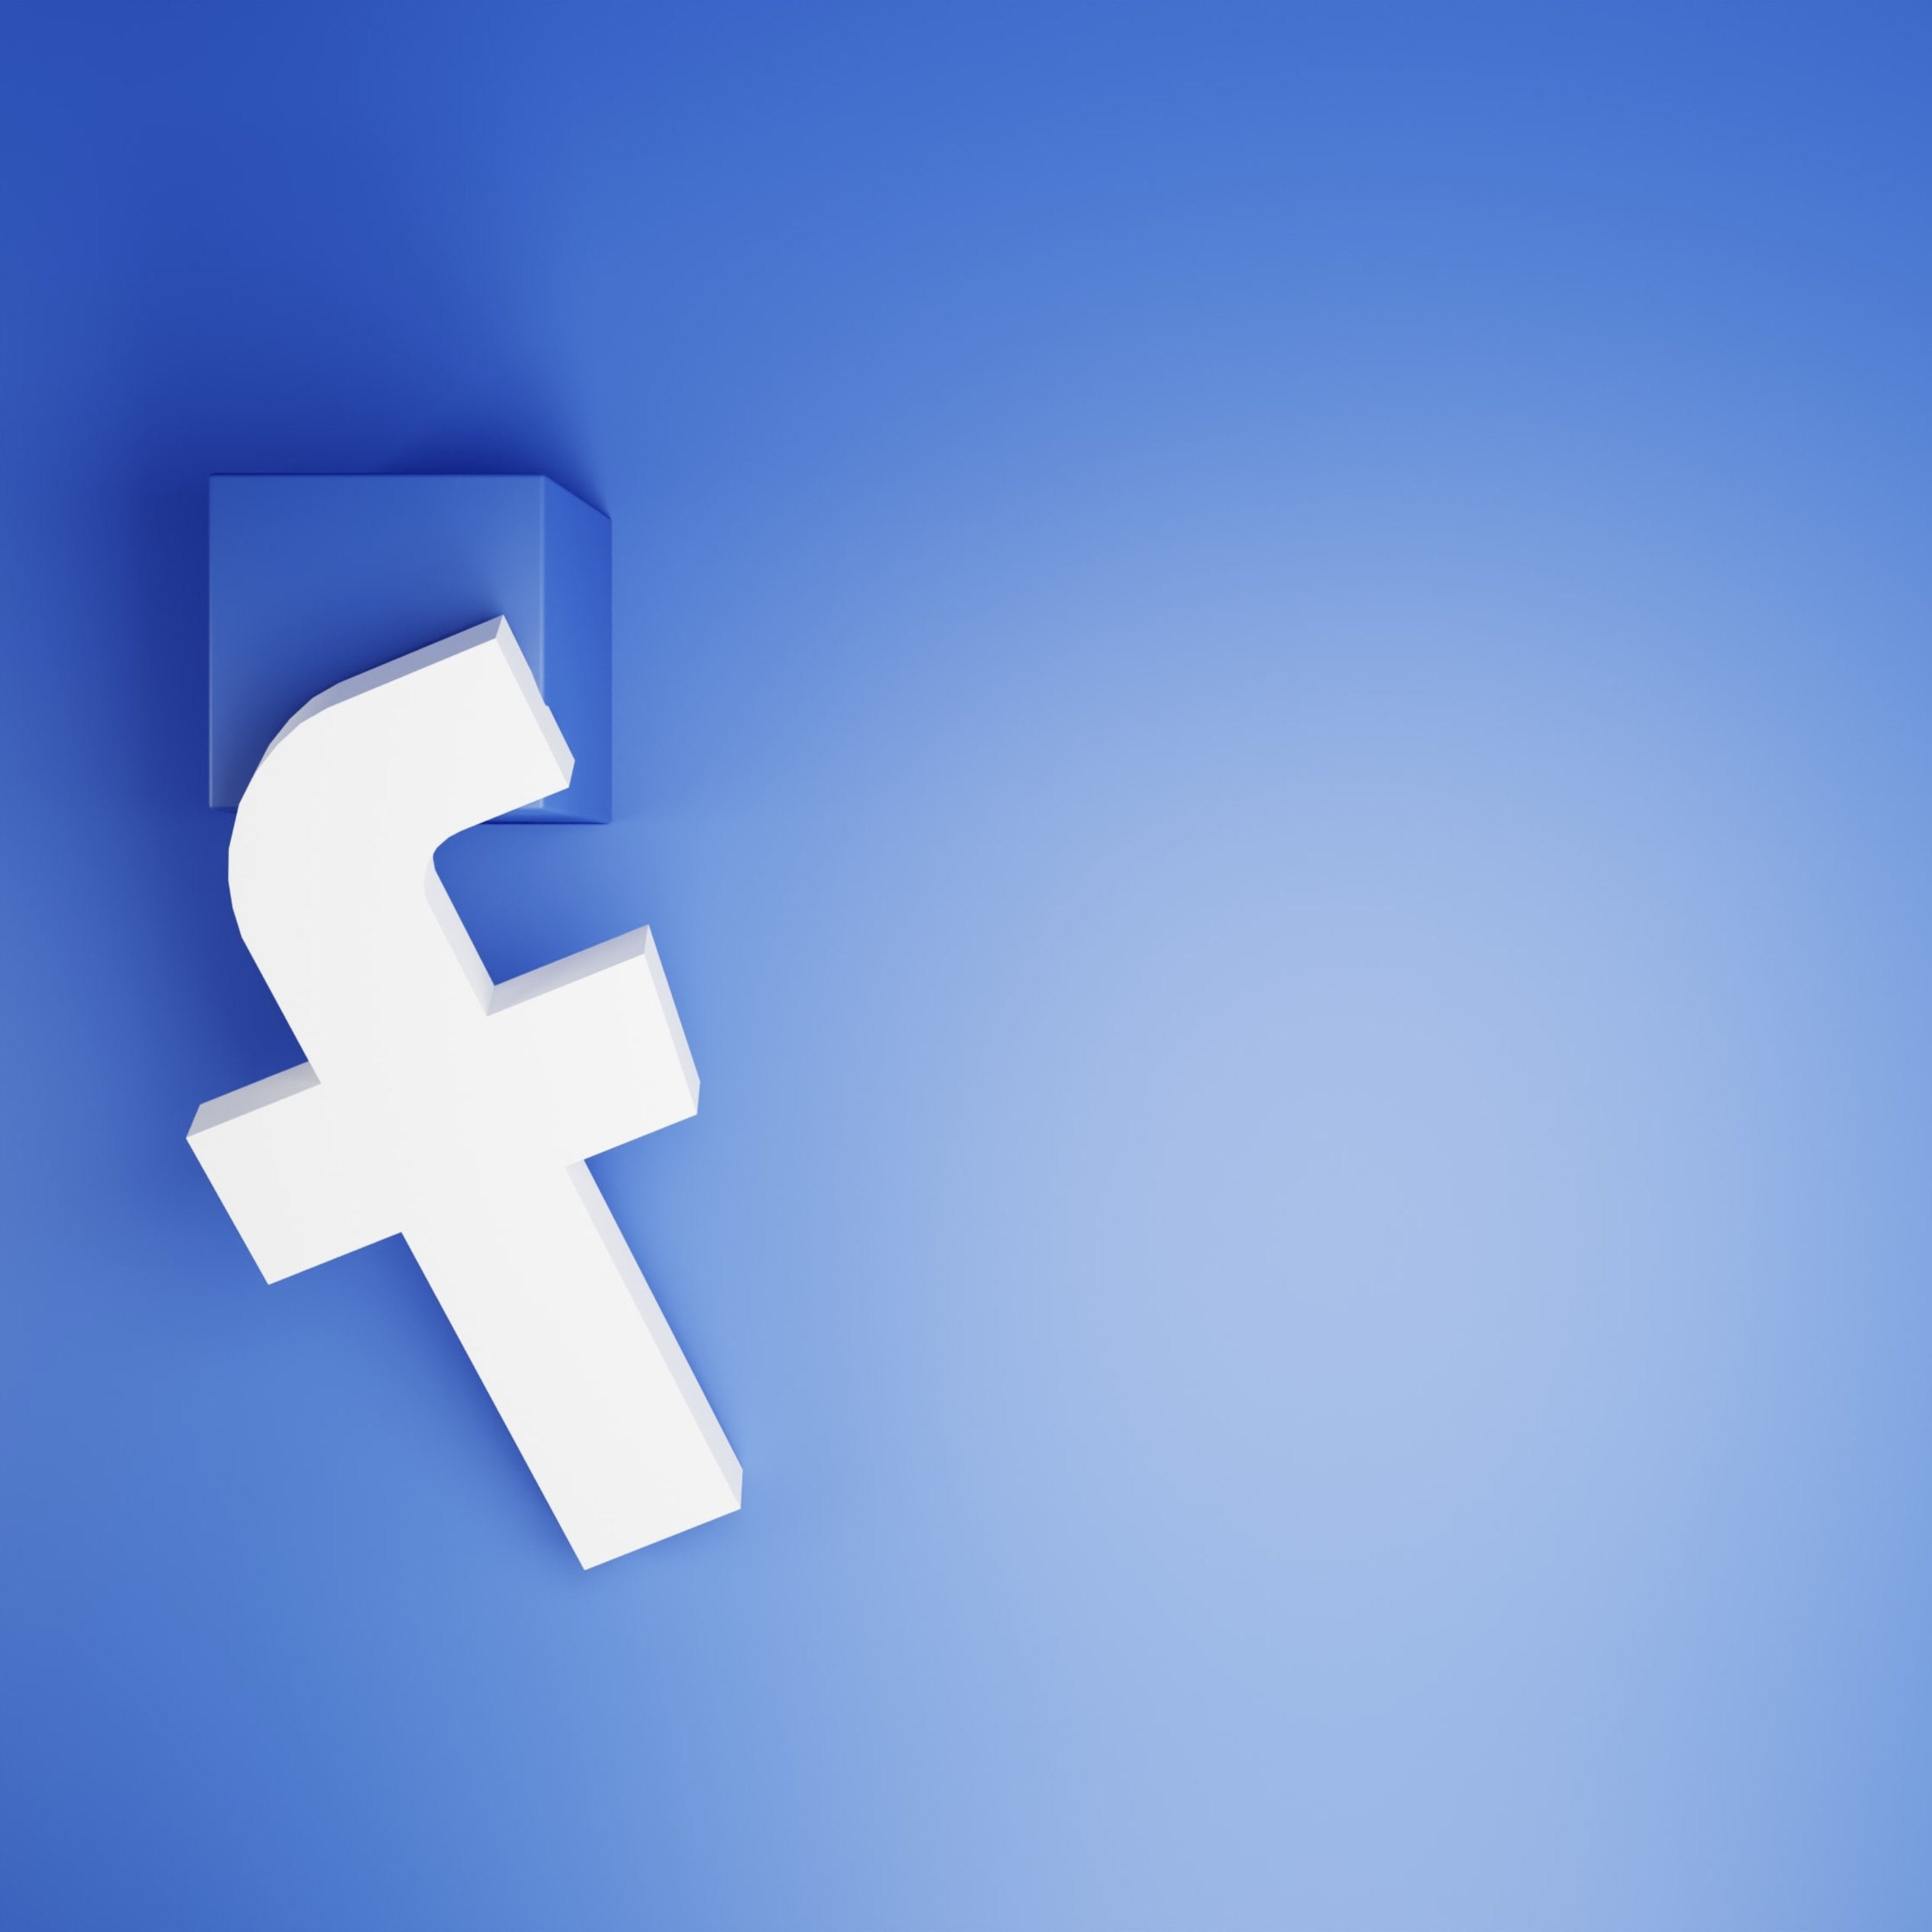 12 motivos por los cuales podrías ser bloqueado y expulsado de Facebook